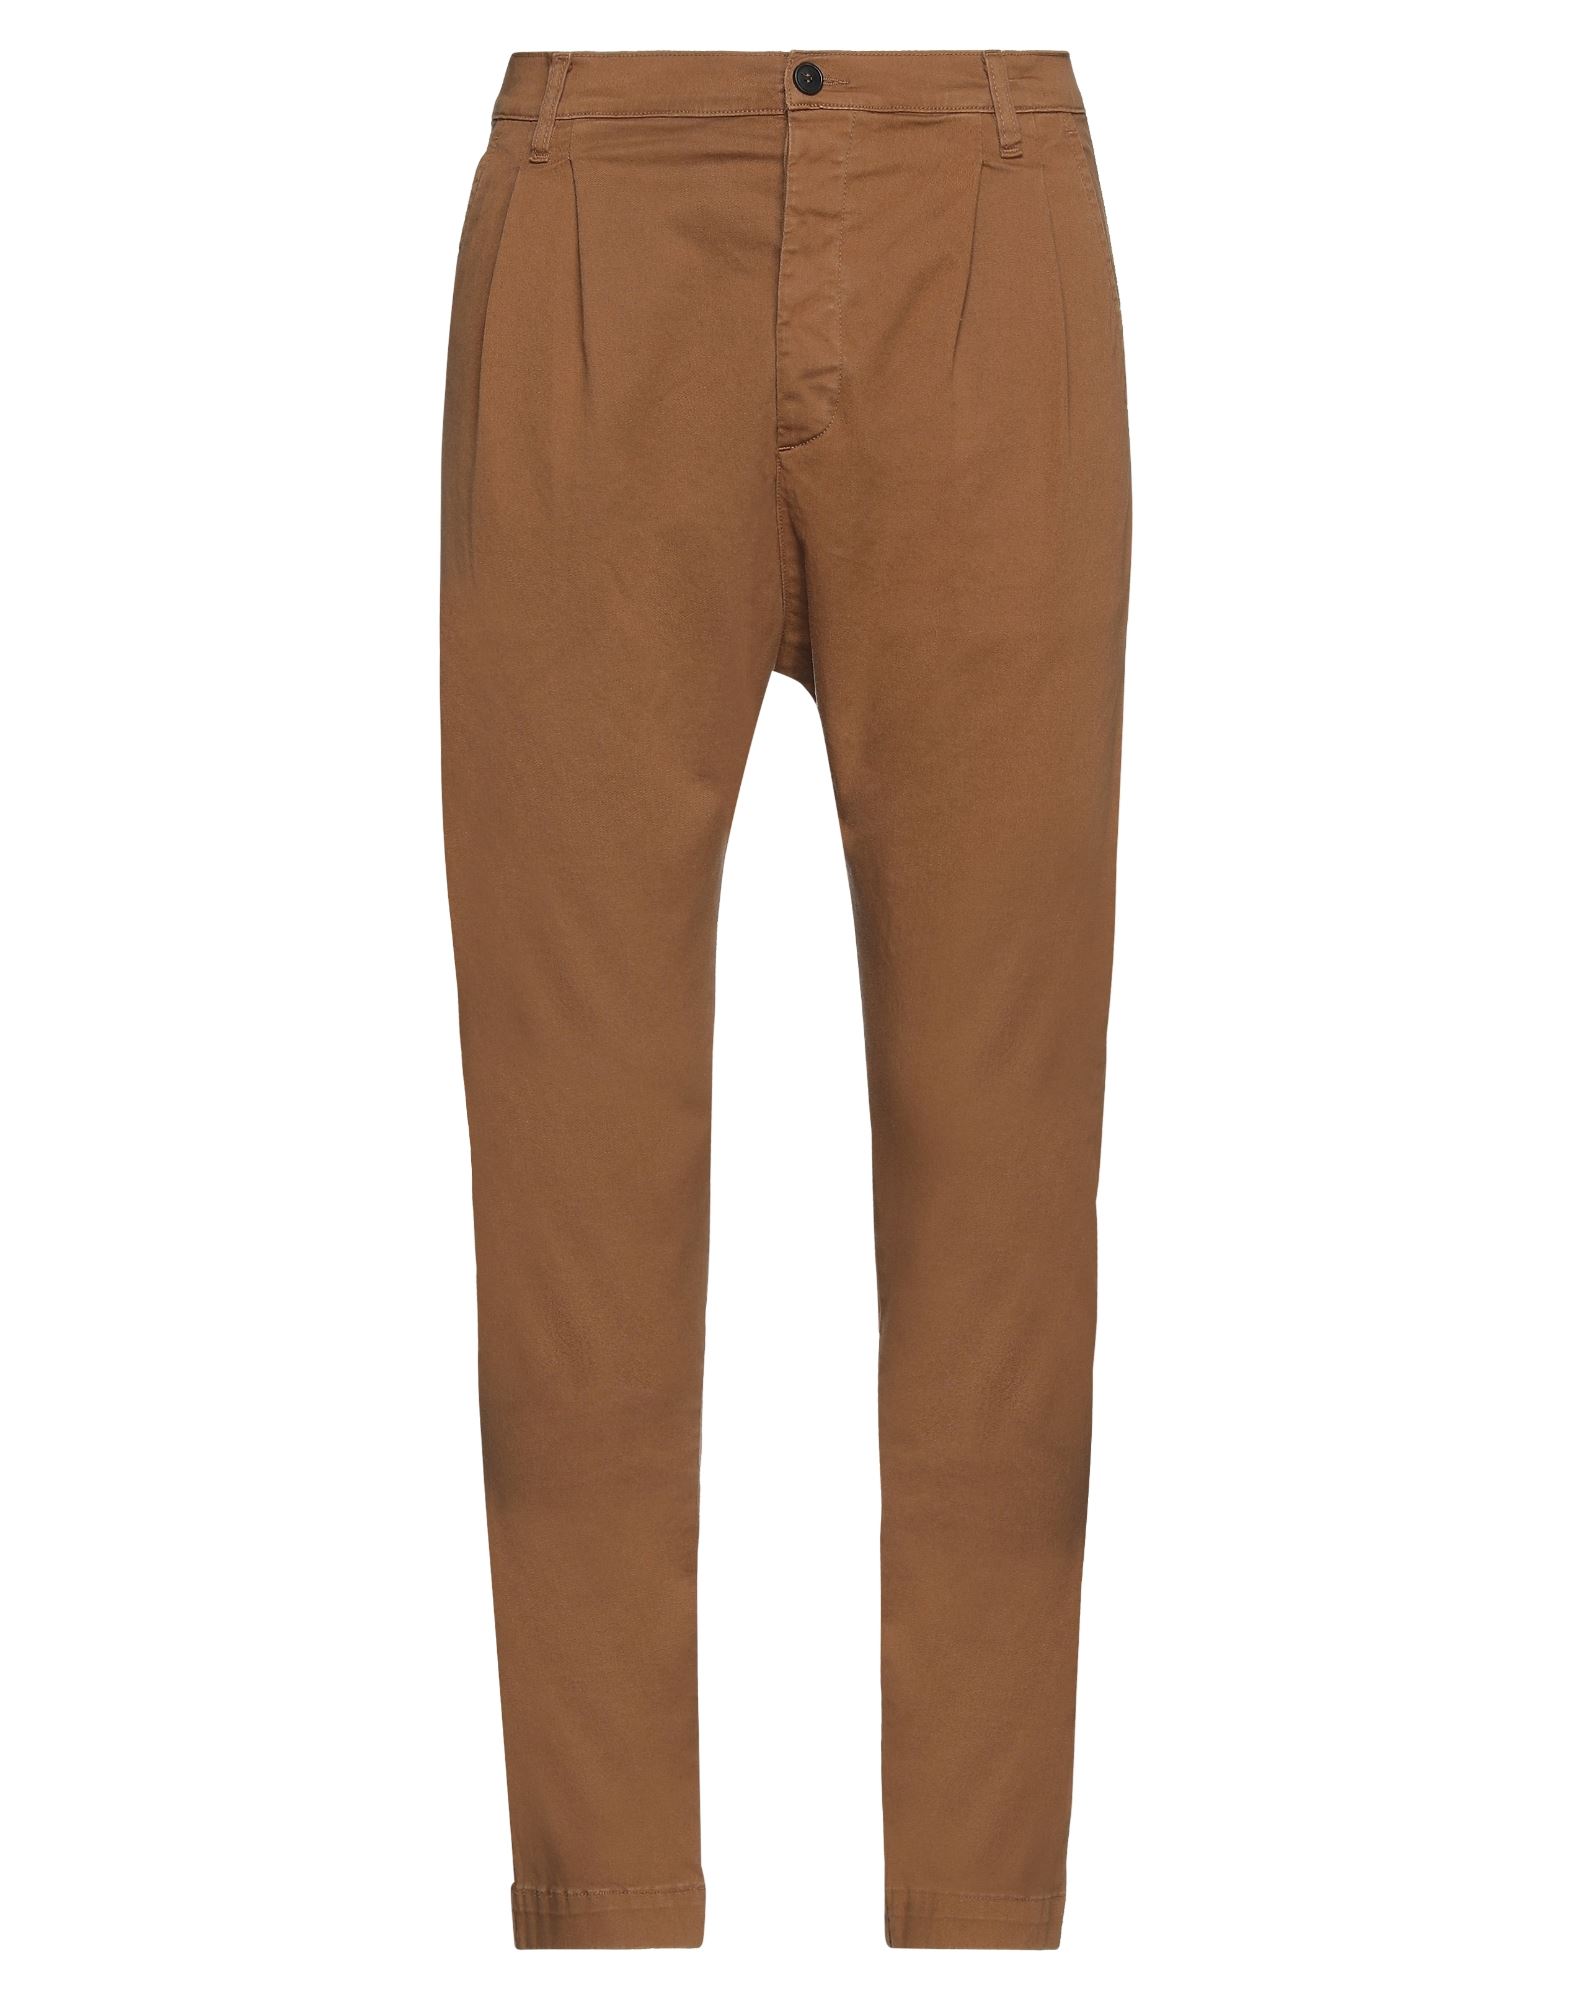 Novemb3r Man Pants Brown Size 32 Cotton, Elastane